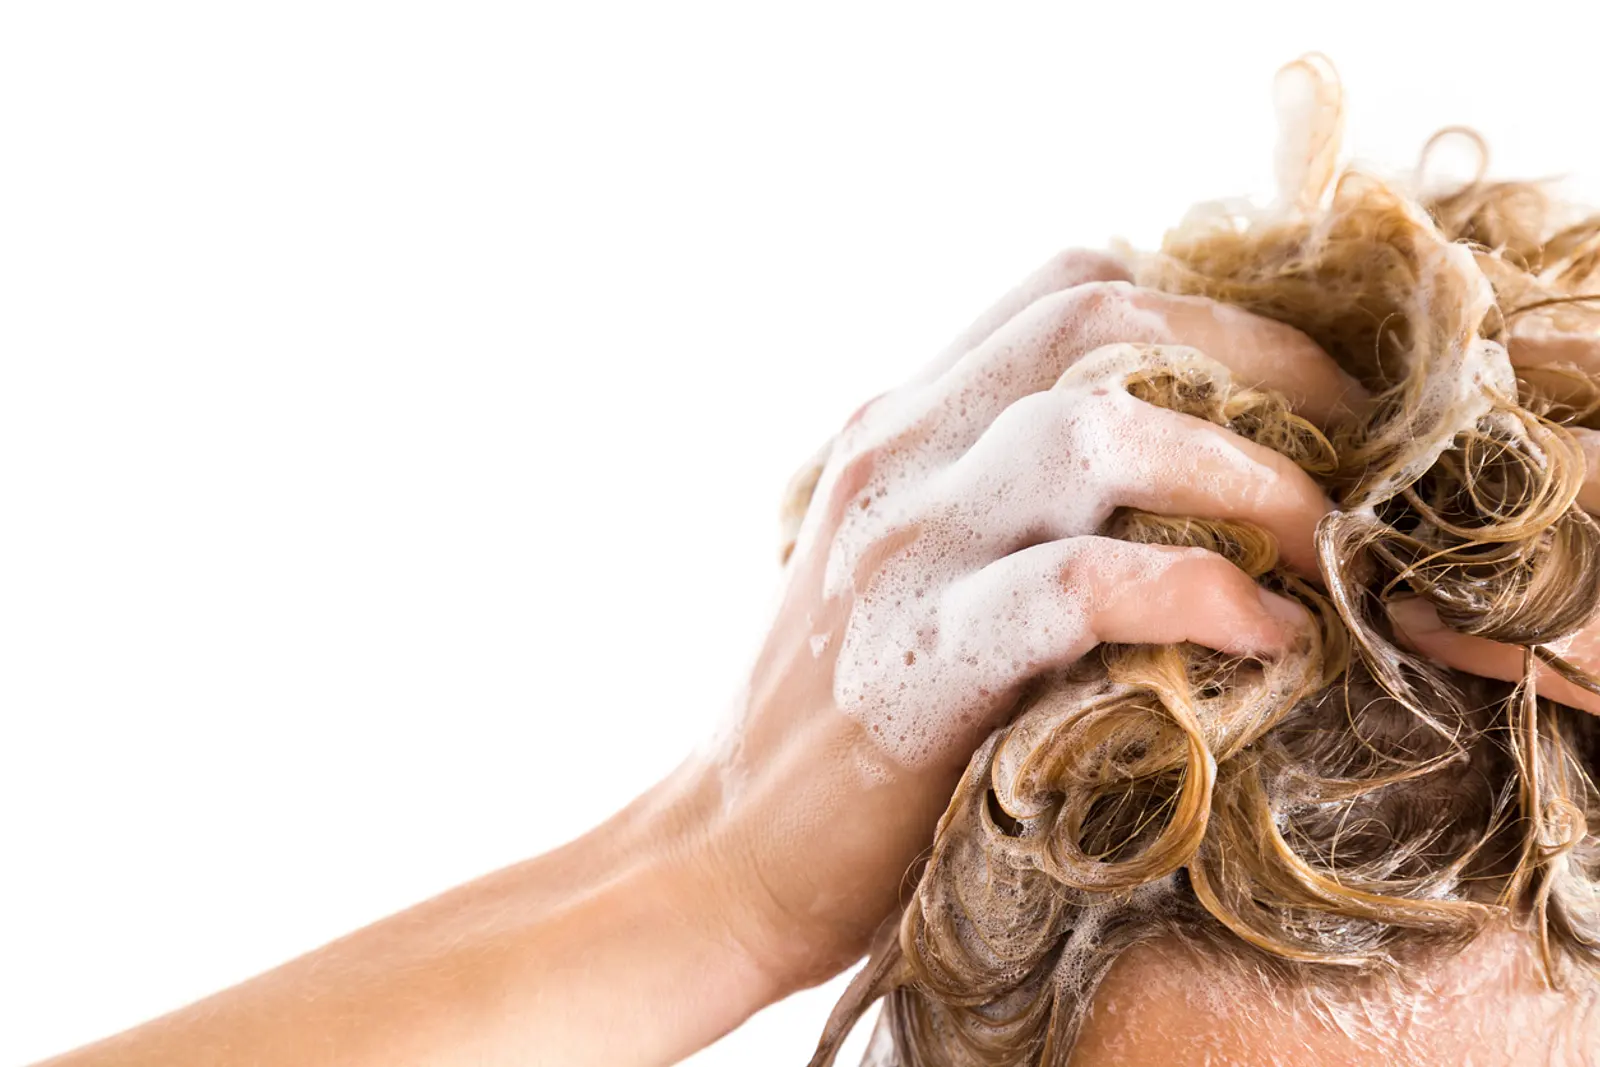 Mit shampoo dunkler machen haare Kopfläuse erkennen